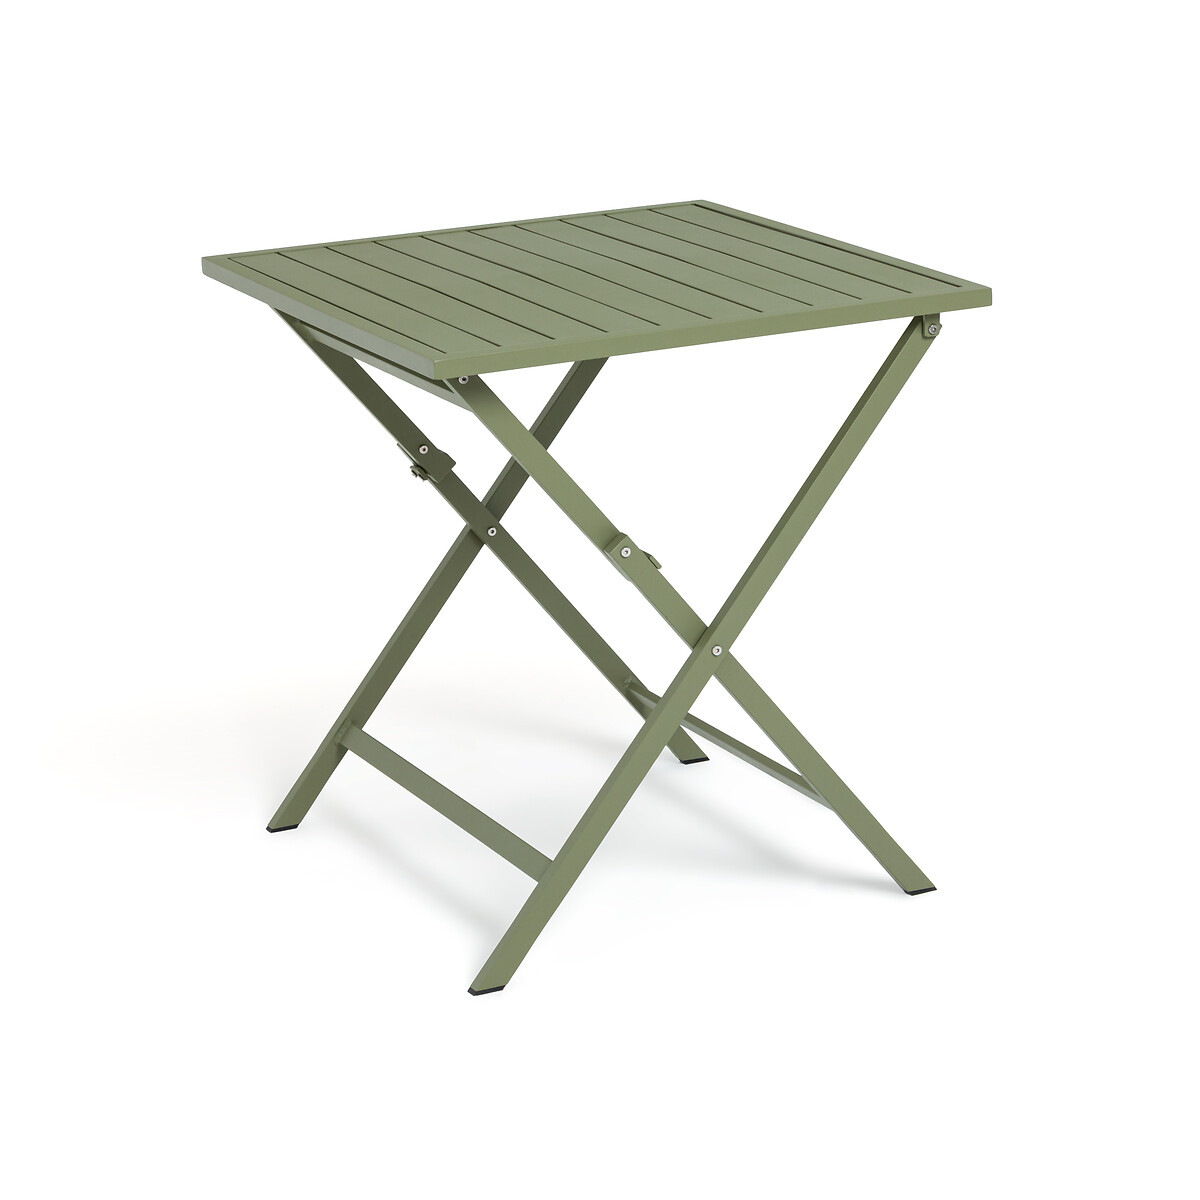 Стол садовый из алюминия Zapy единый размер зеленый стол садовый складной из алюминия manni единый размер серый